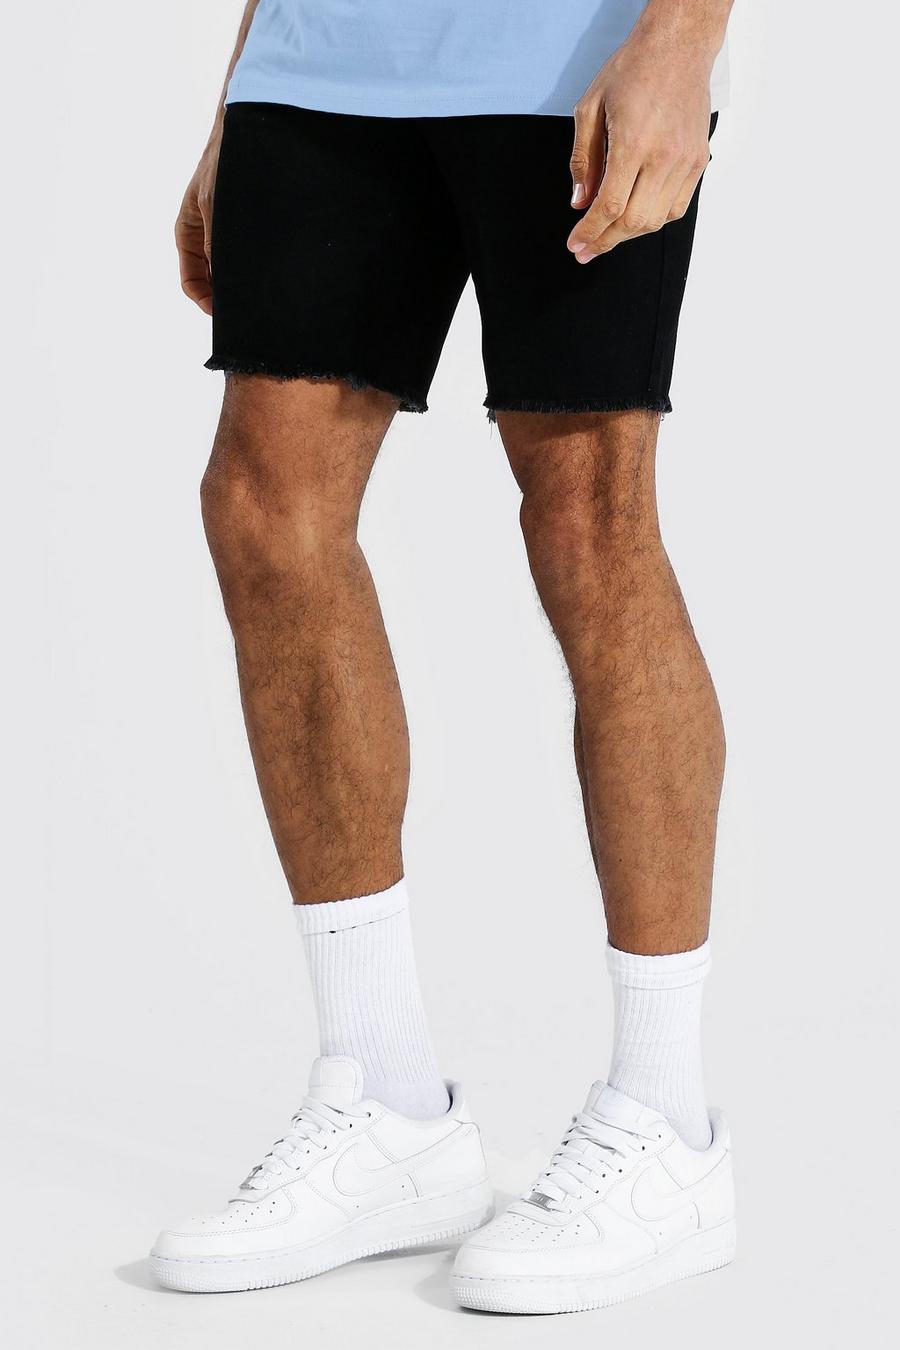 Pantalones cortos vaqueros rasgados rígidos de corte ajustado con bajo sin rematar, Negro desteñido image number 1